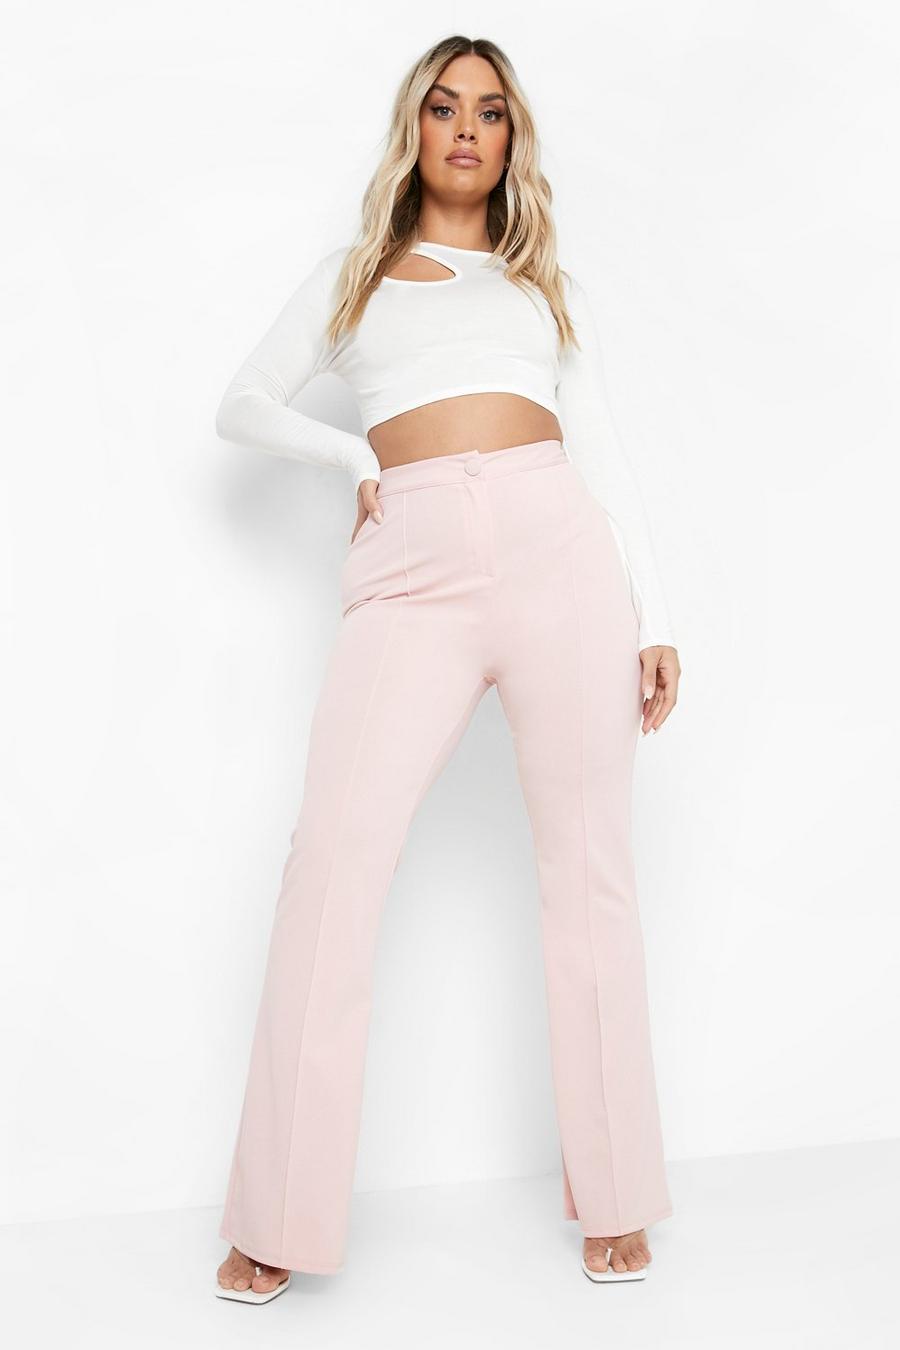 סמוק rosa מכנסיים מתרחבים עם חלק עליון צמוד ועיטור תפרים, מידות גדולות